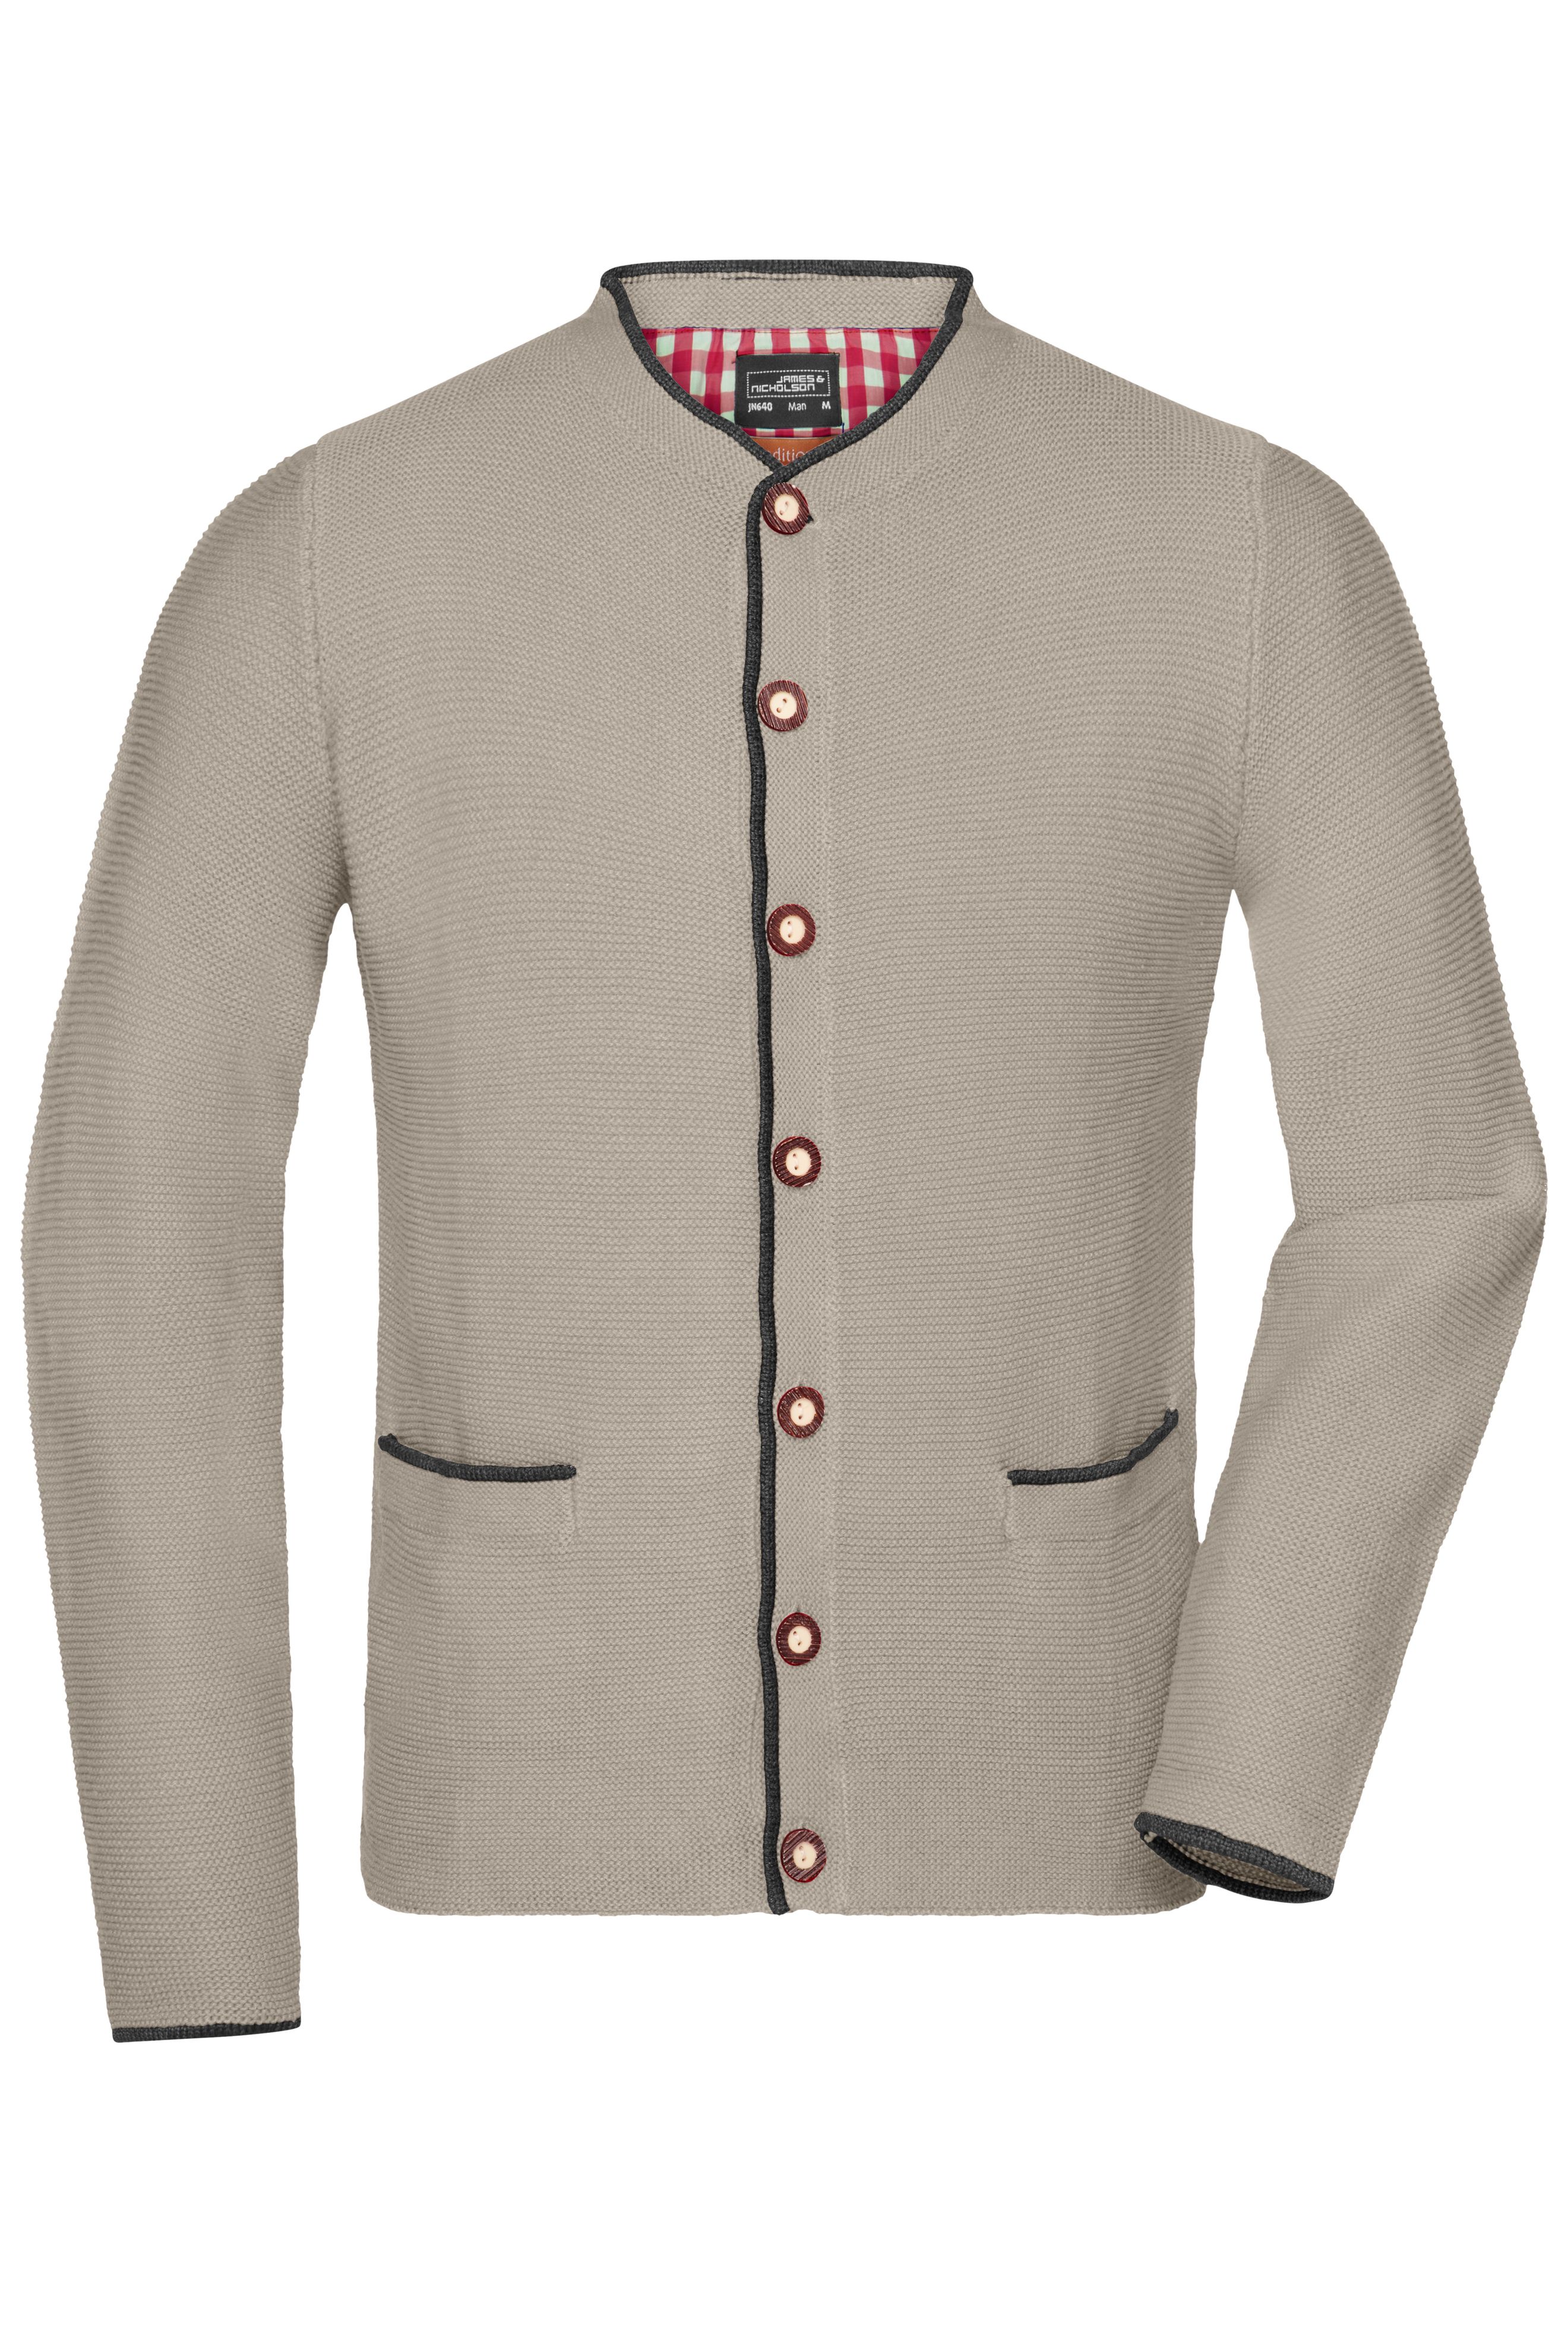 Men's Traditional Knitted Jacket JN640 Strickjacke im klassischen Trachtenlook